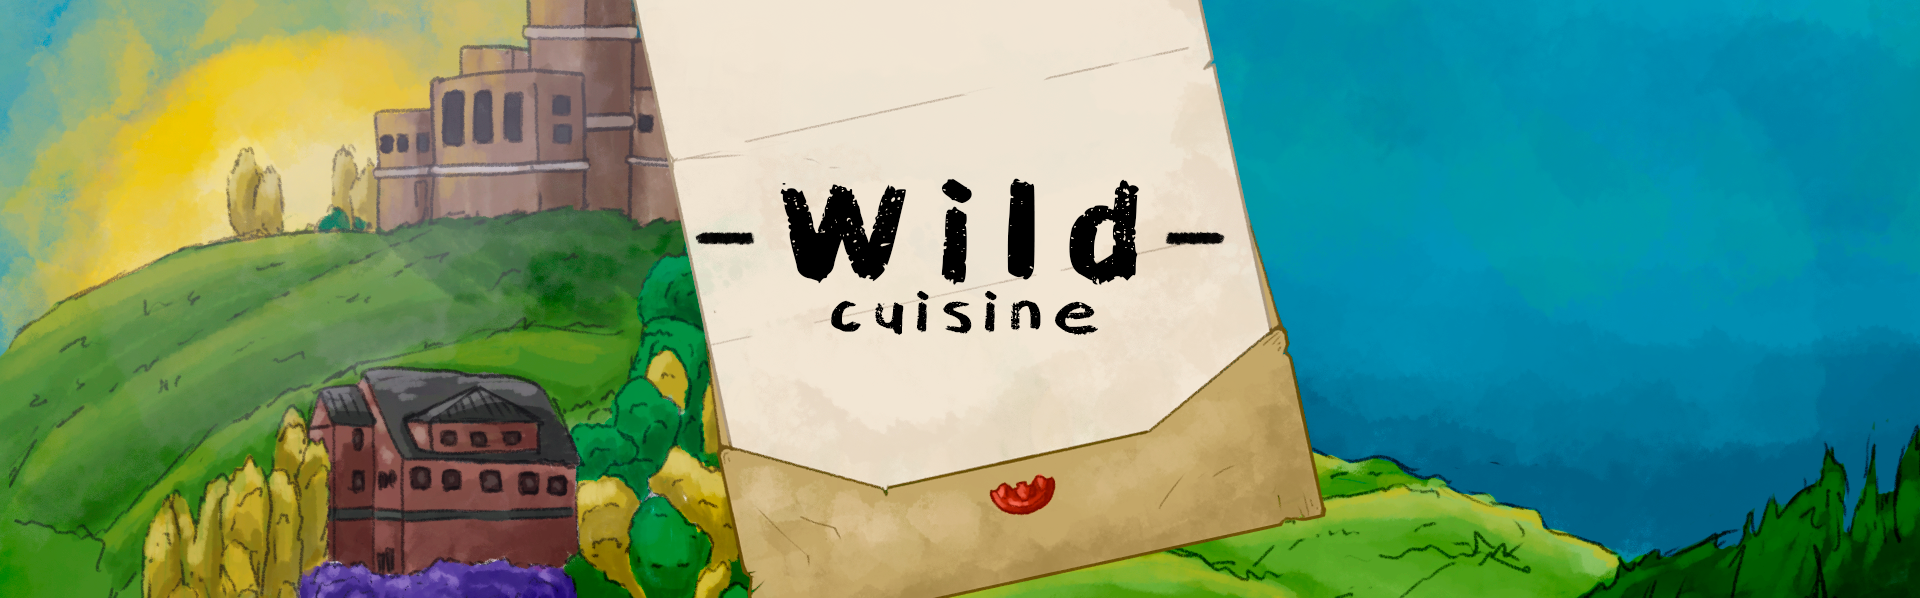 Wild cuisine